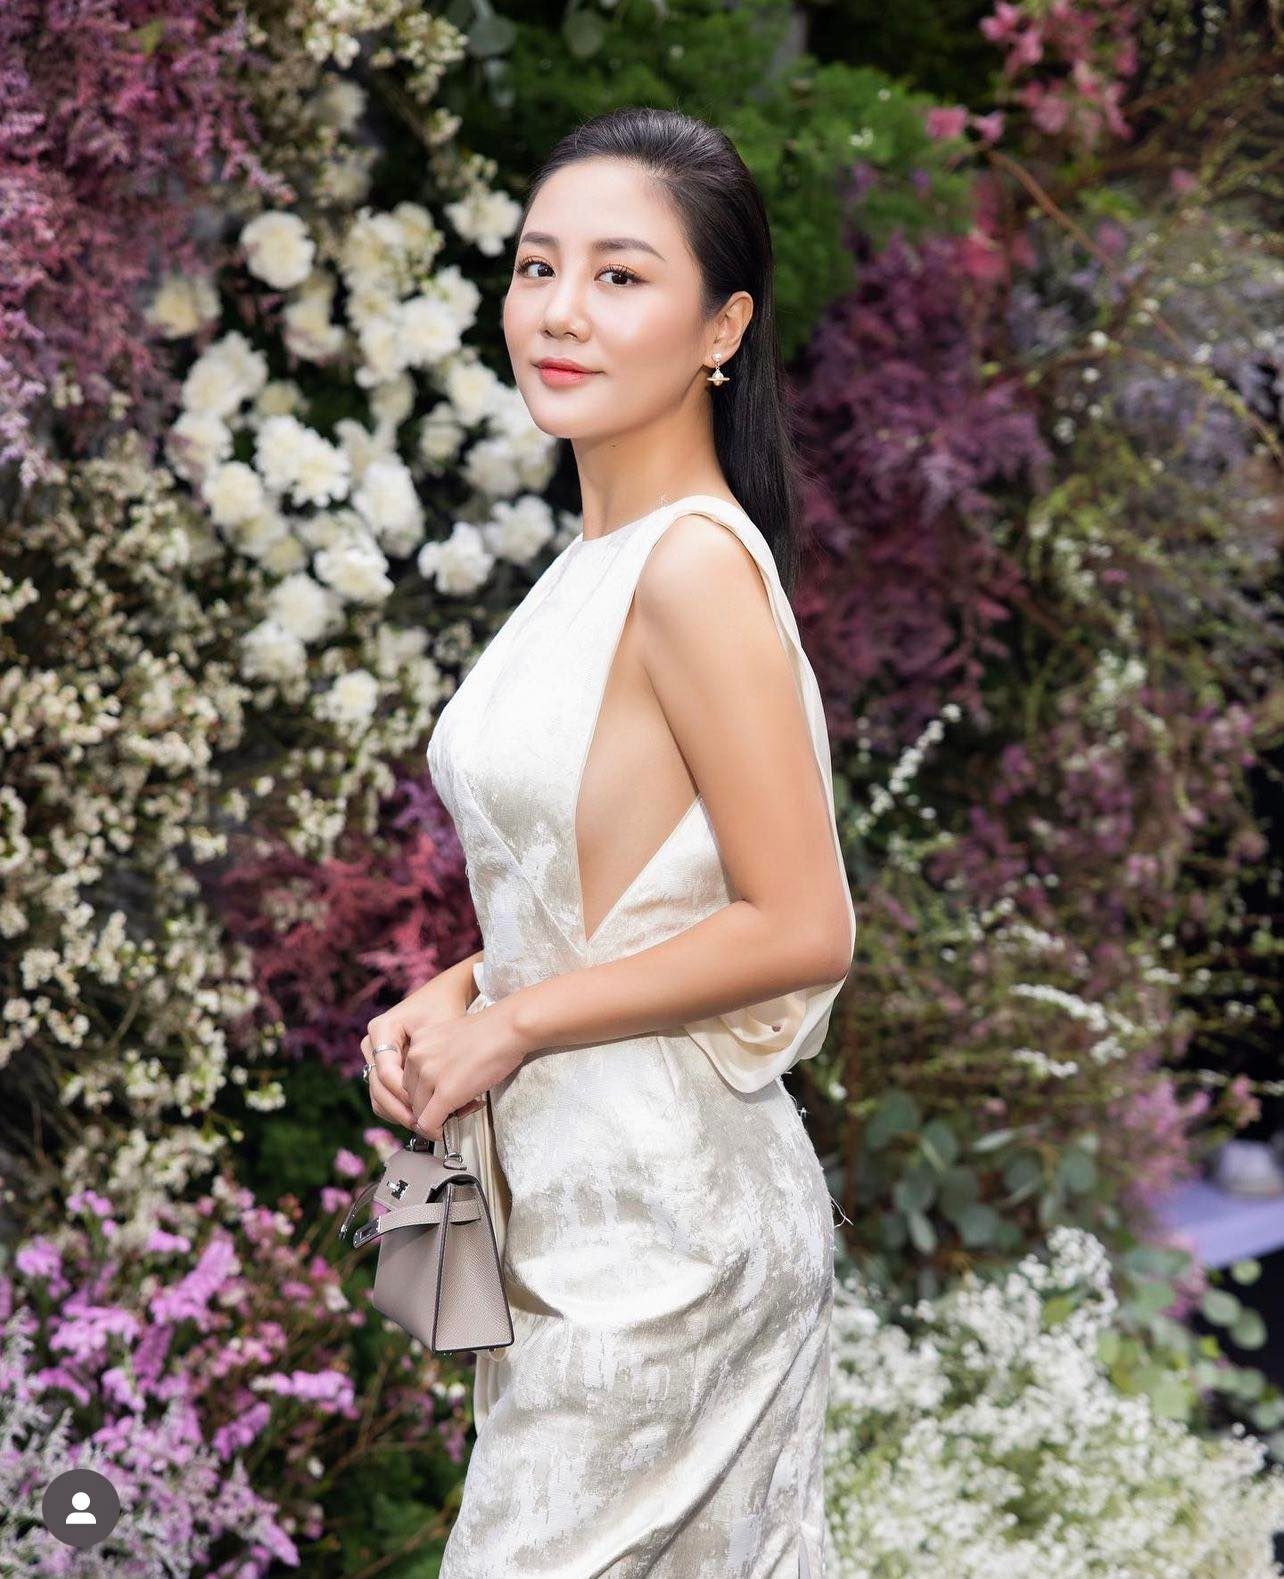 Văn Mai Hương lại diện váy mạo hiểm khoe dáng đẹp, khiến người nhìn "thót tim" - 2